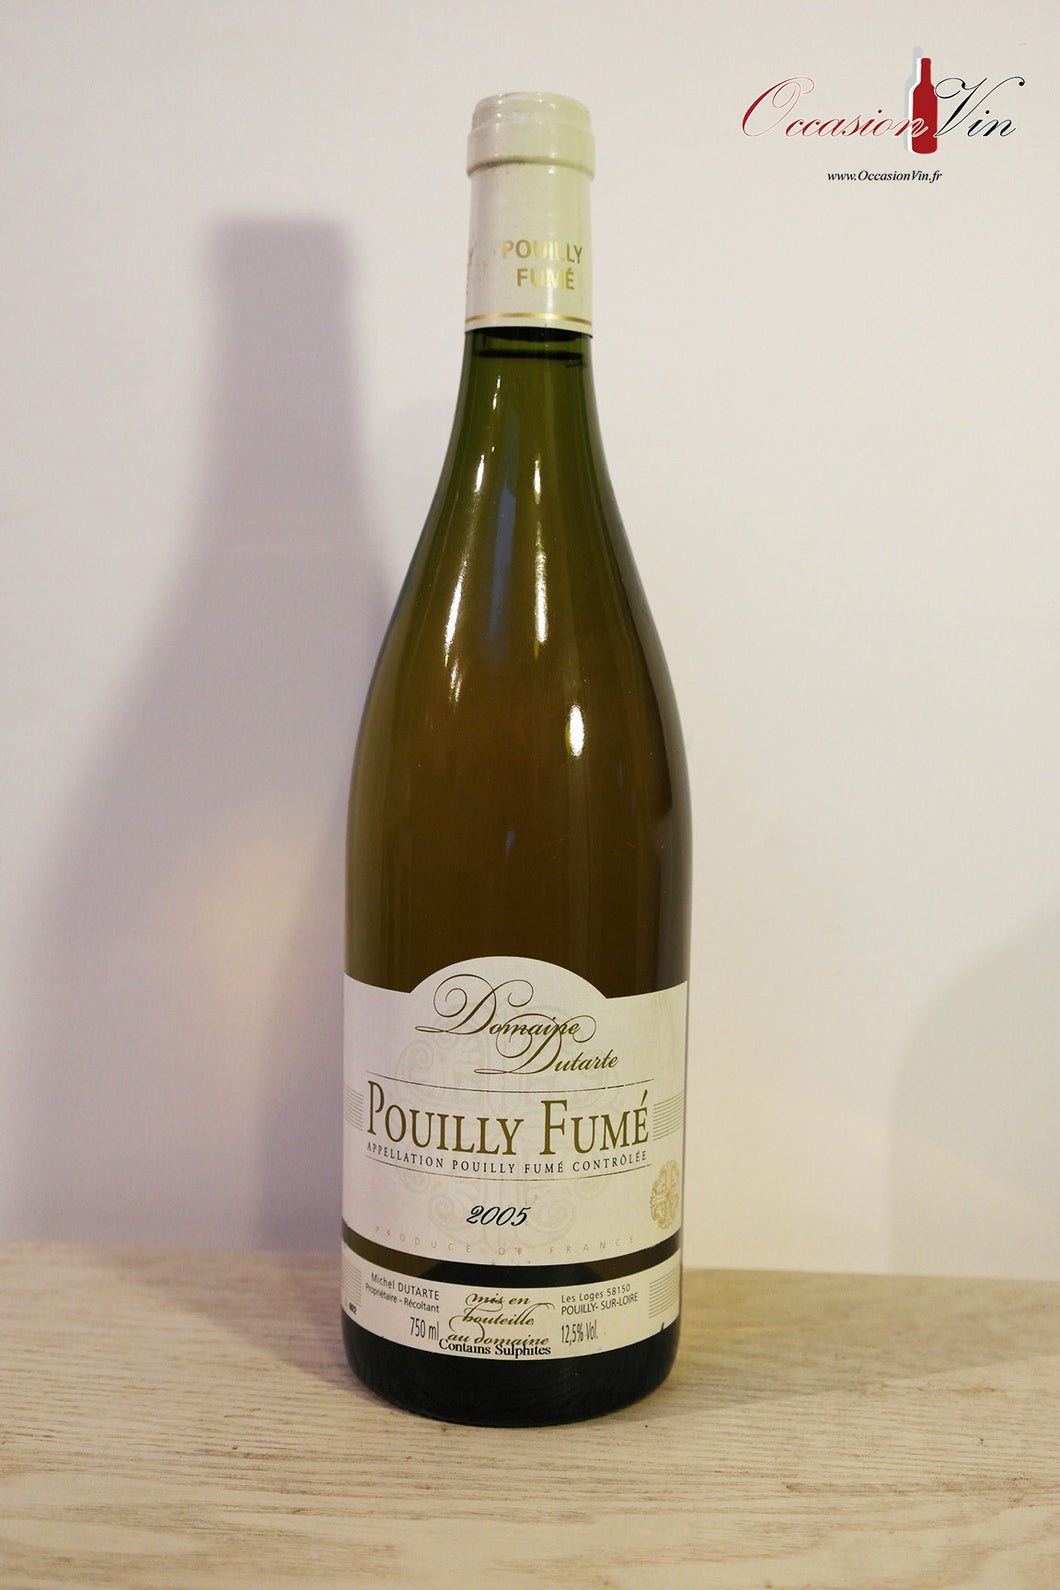 Domaine Dutarte Pouilly Fumé Vin 2005